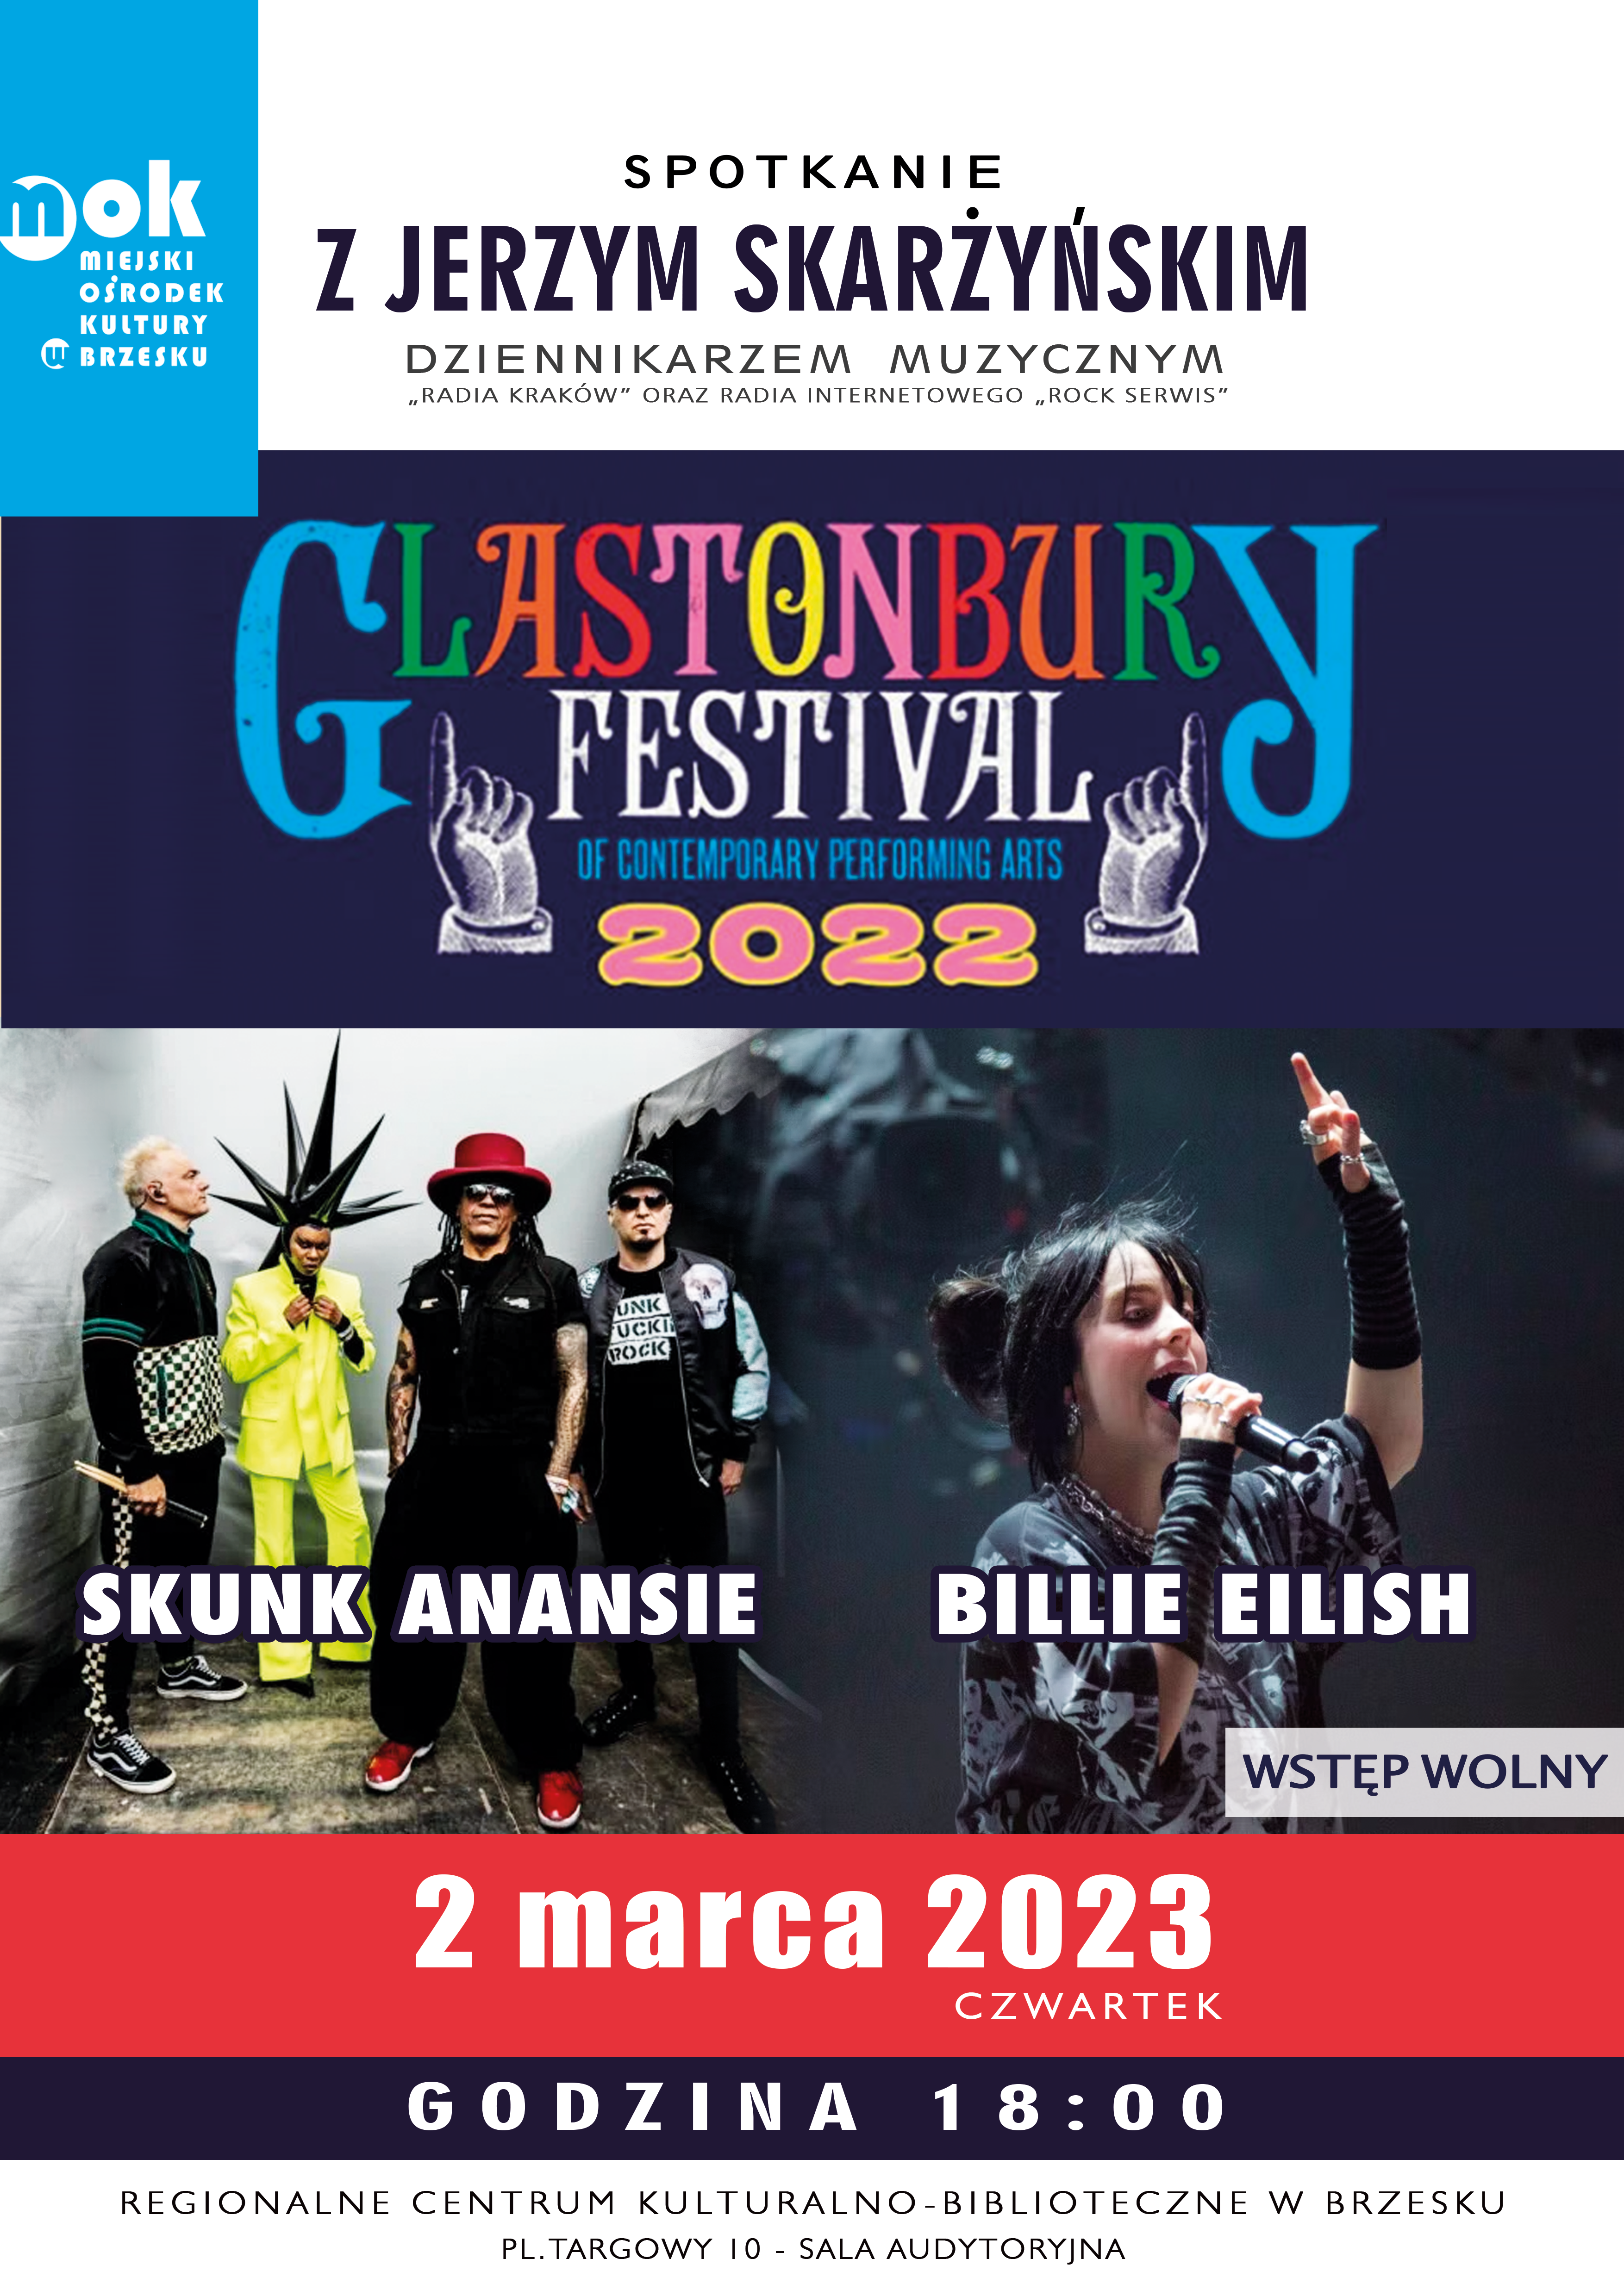 Spotkanie z Jerzym Skarżyńskim: Billie Eilish/ Skunk Anansie: live at Glastonbury 2023 – 2 marca 2023